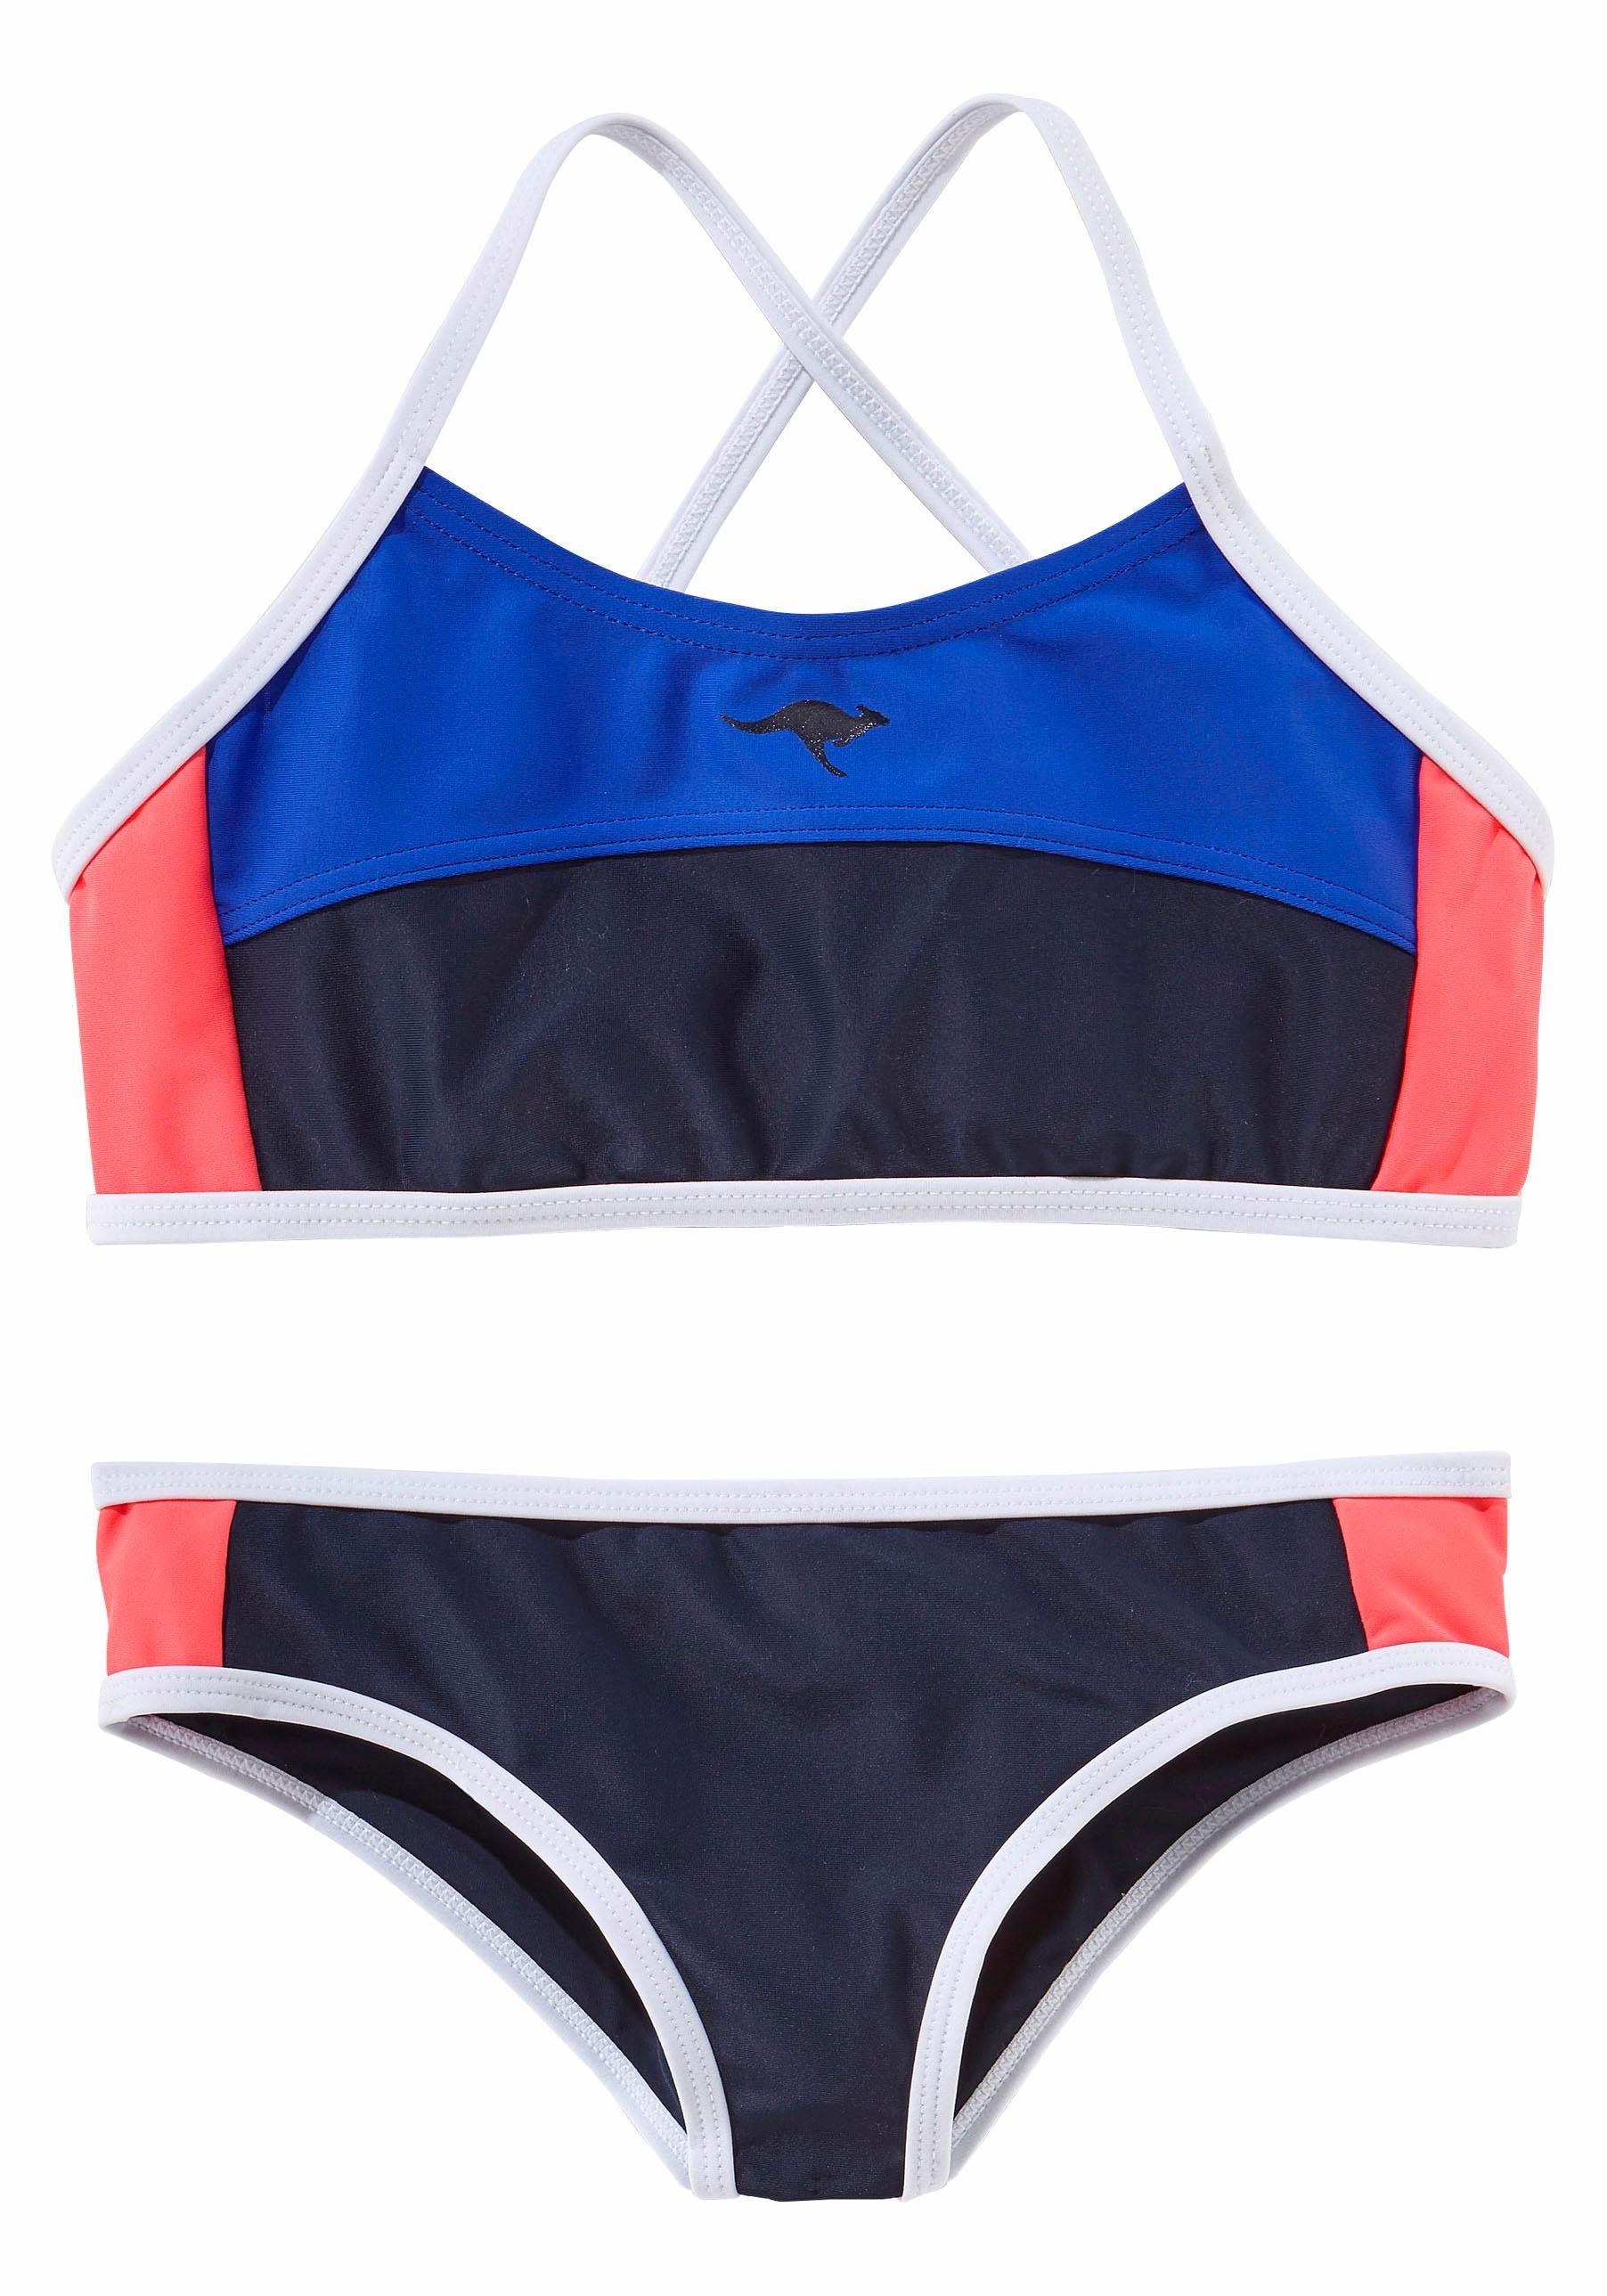 Bustier-Bikini, im Look sportlichen KangaROOS jetzt bestellen